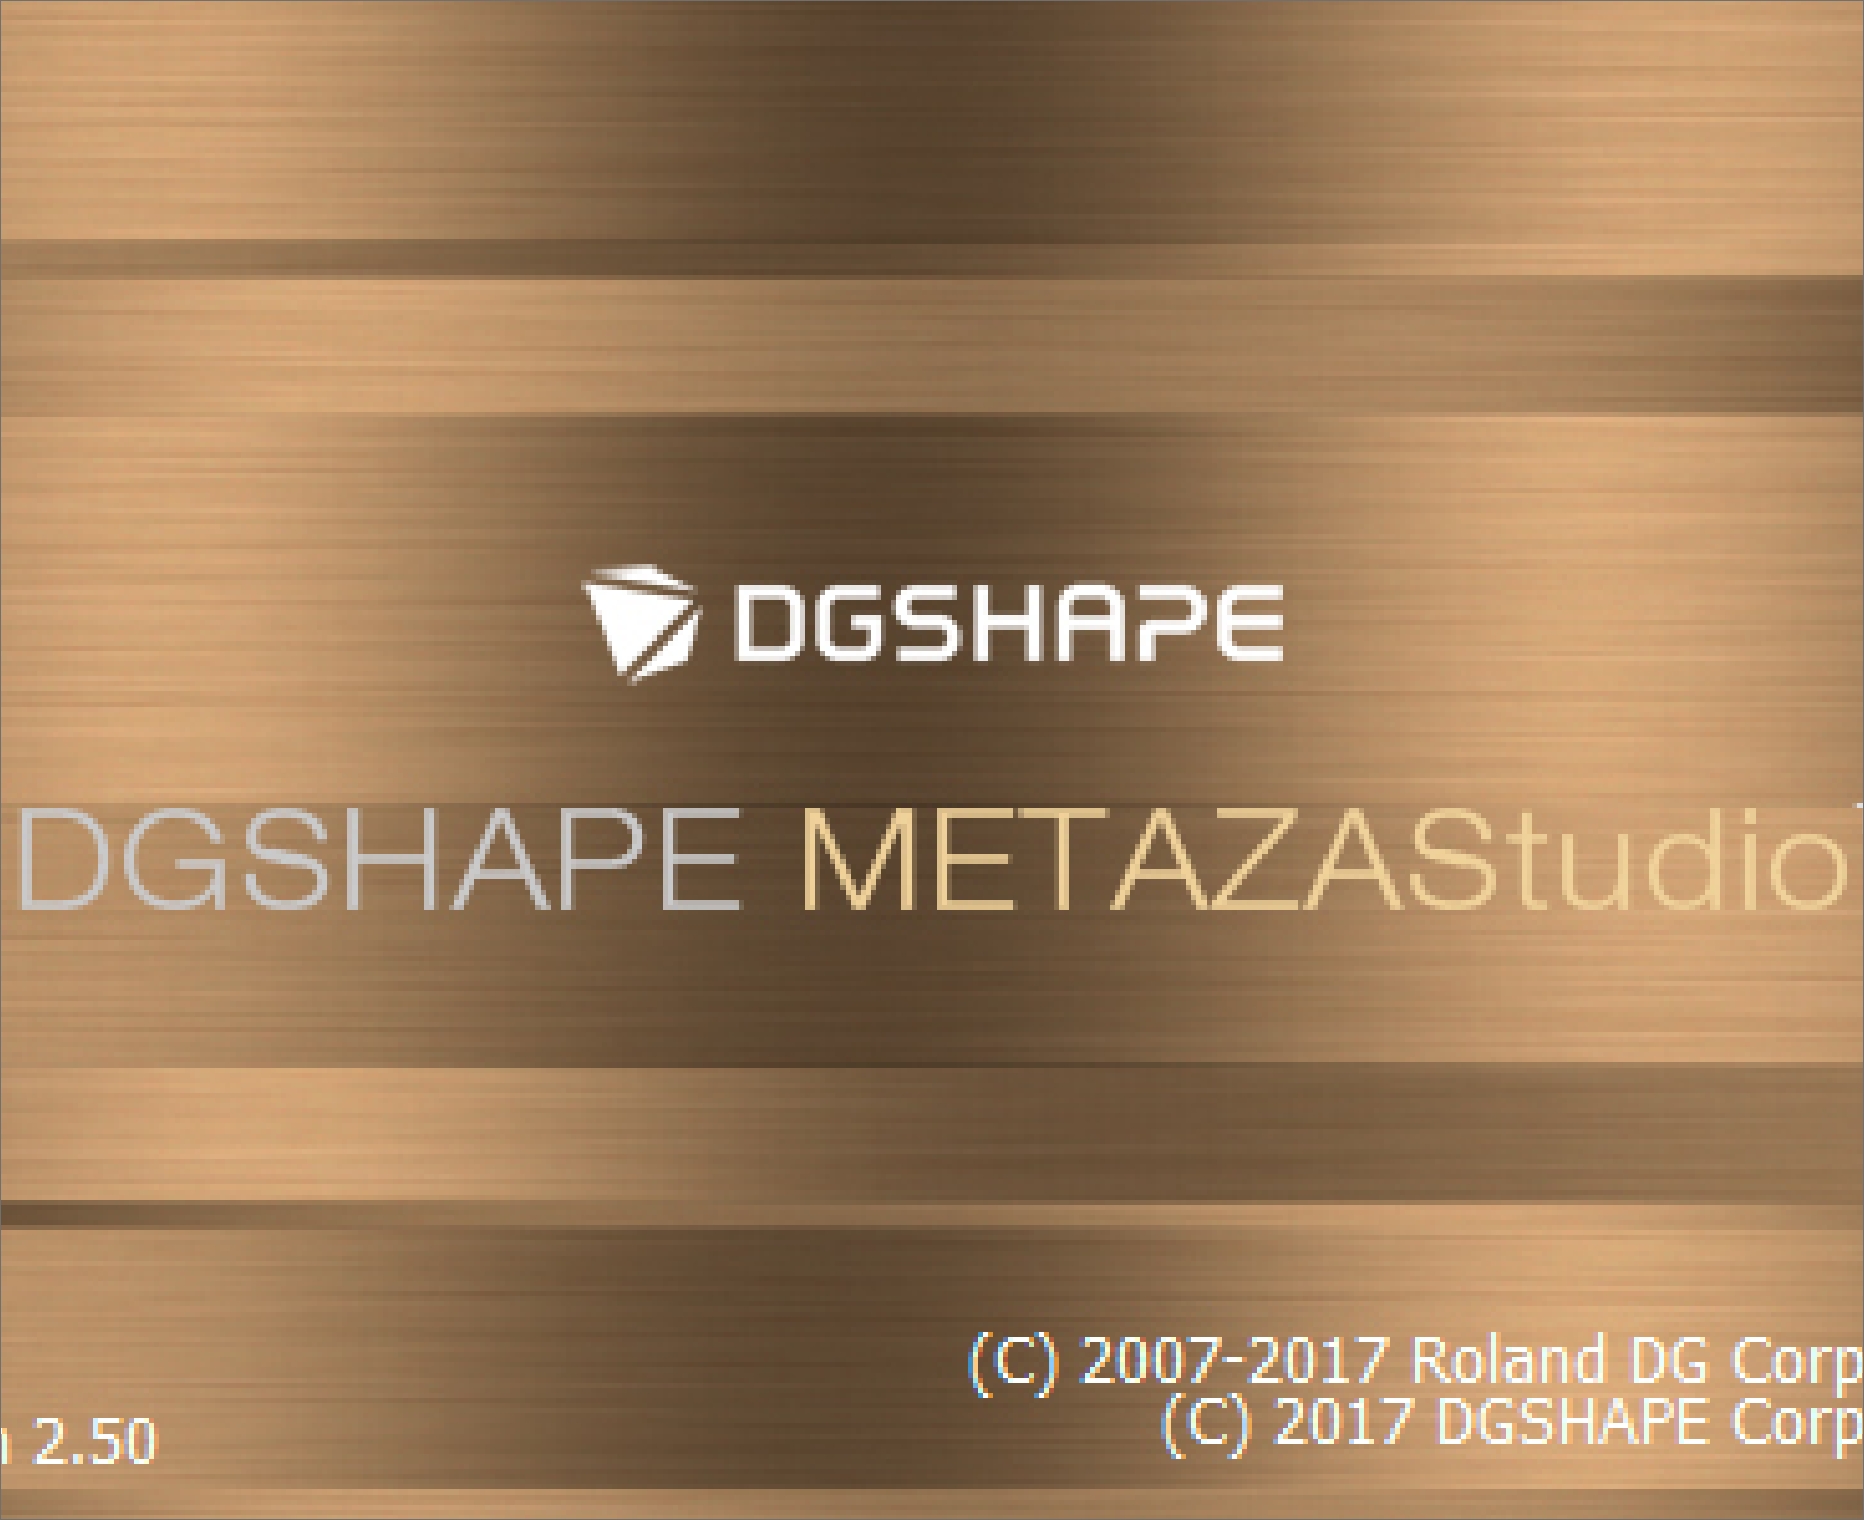 出力ソフトウェア DGSHAPE METAZAStudio（LD-300に標準付属）